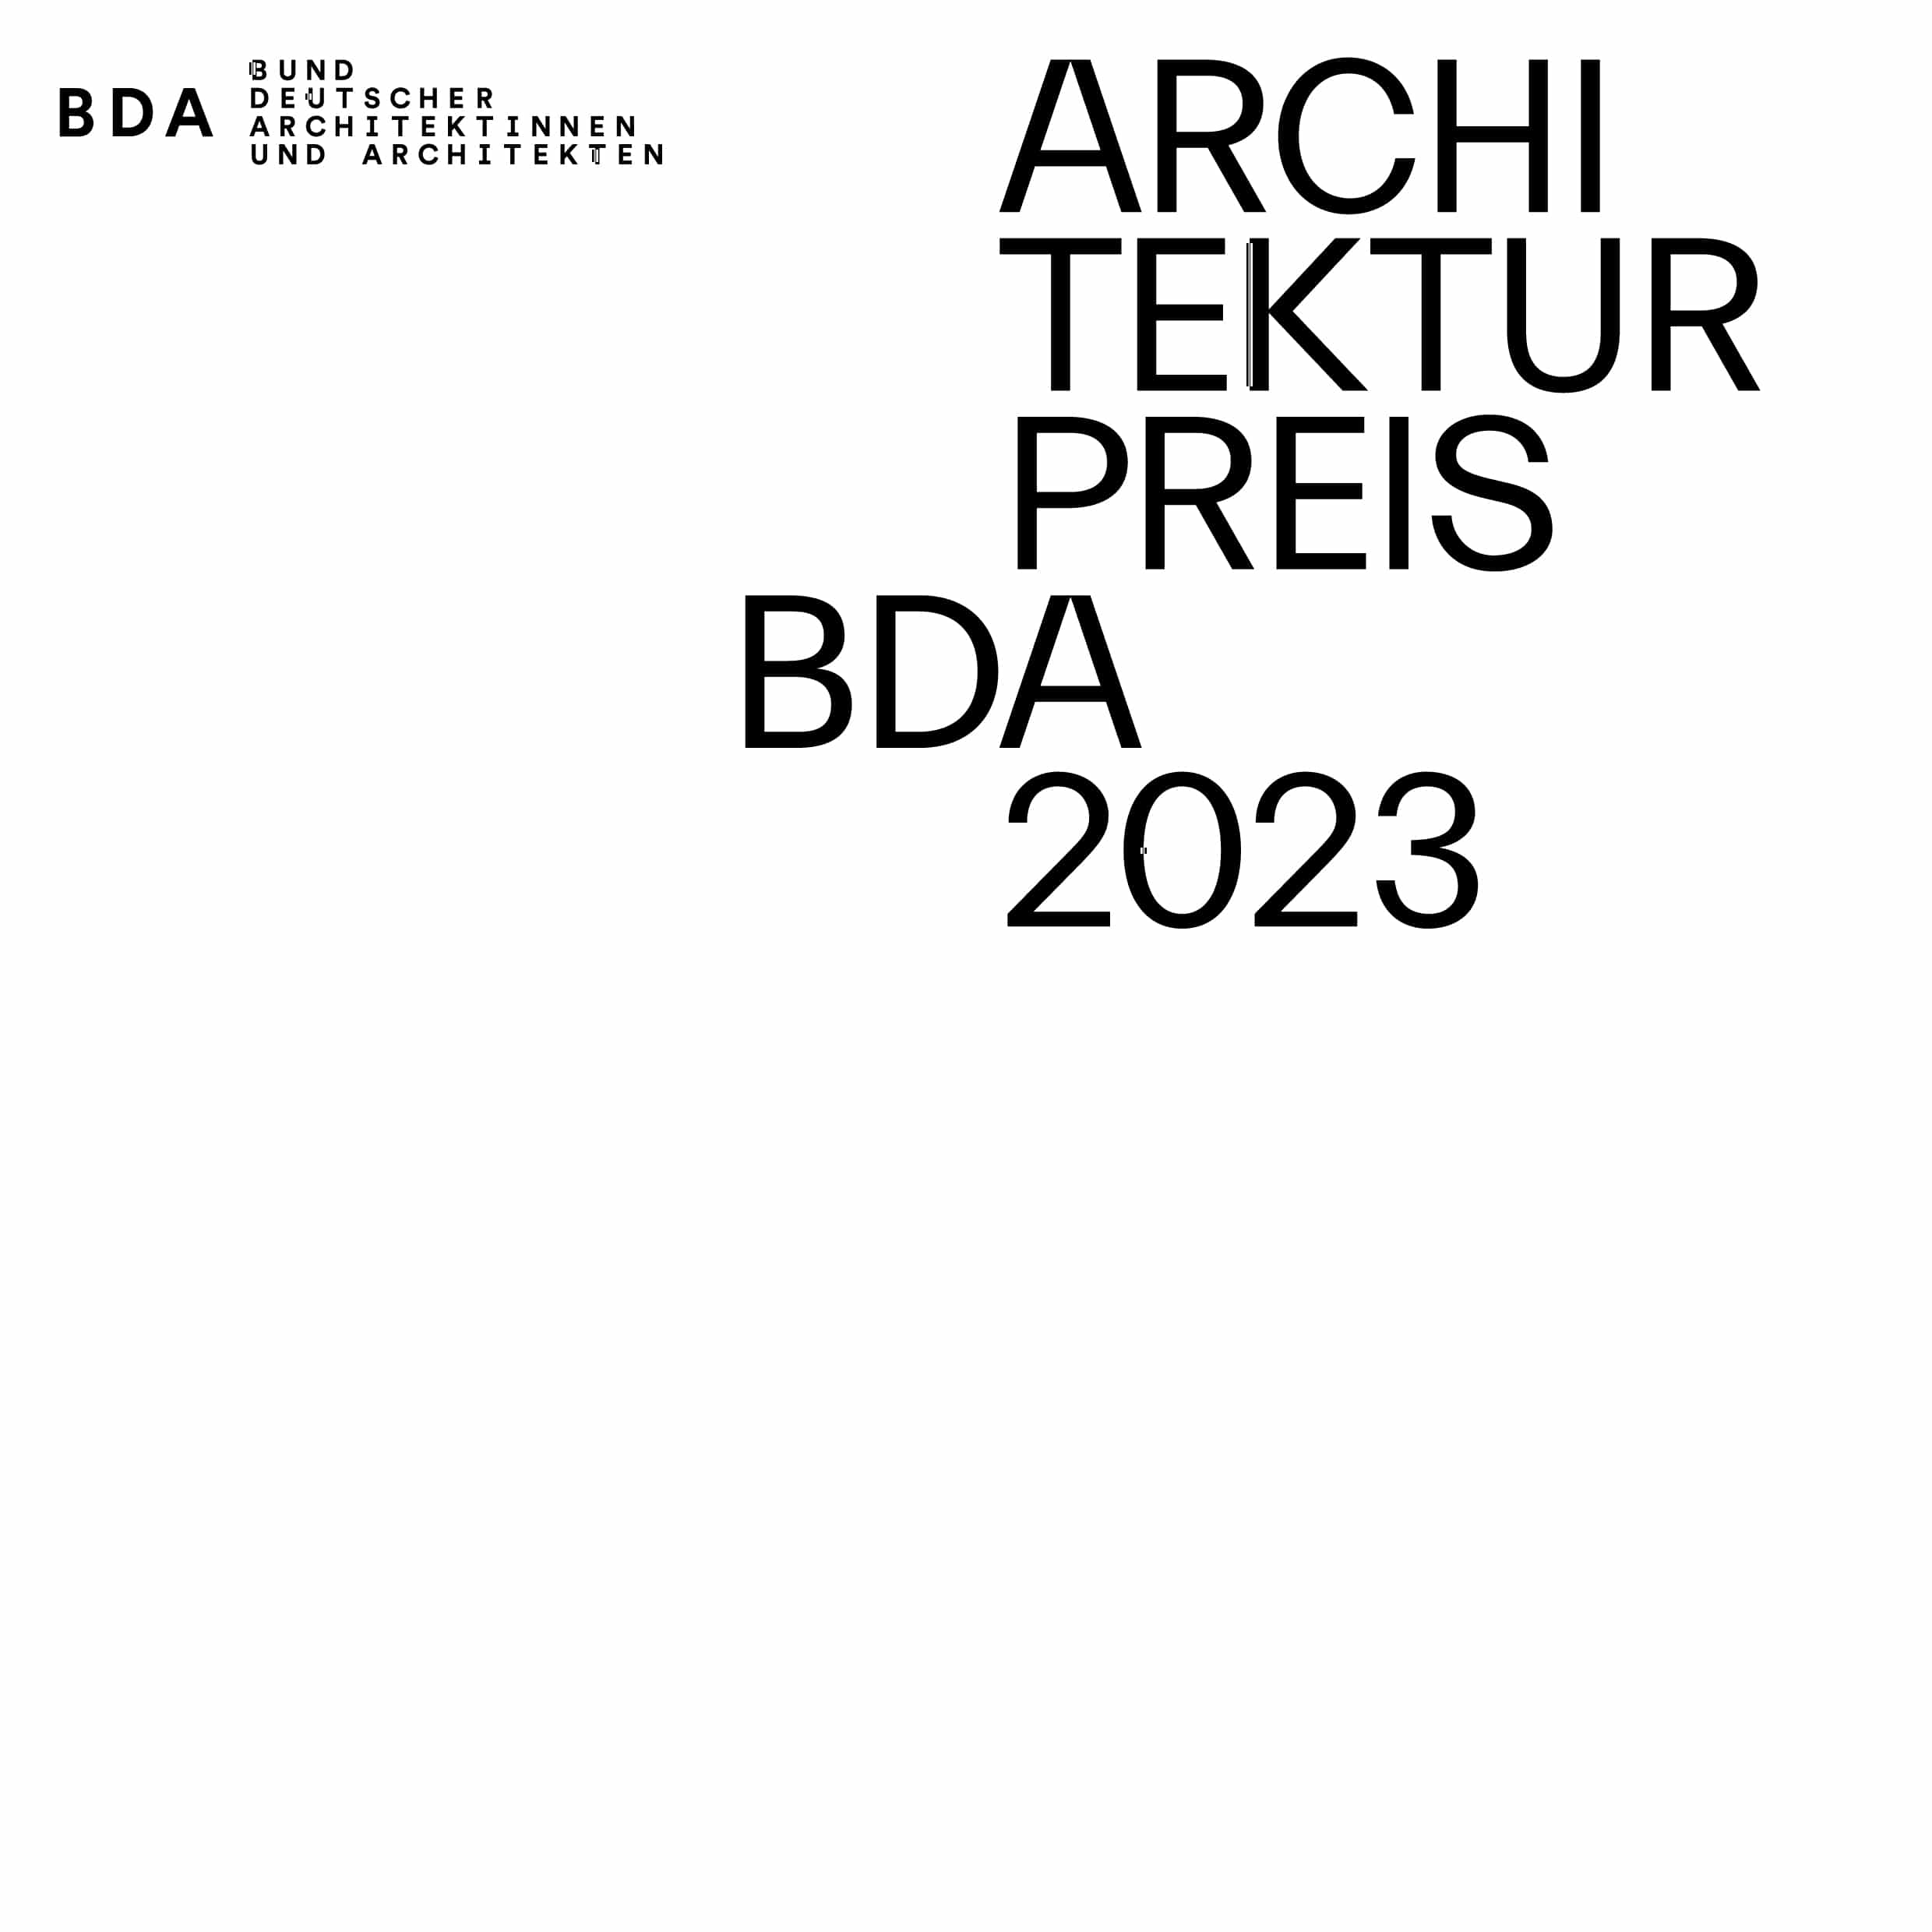 Für die BDA-Architekturpreise 2023 haben sich siebe nVerbände im Ruhrgebiet erstmals synchronisiert. Bildquelle: BDA